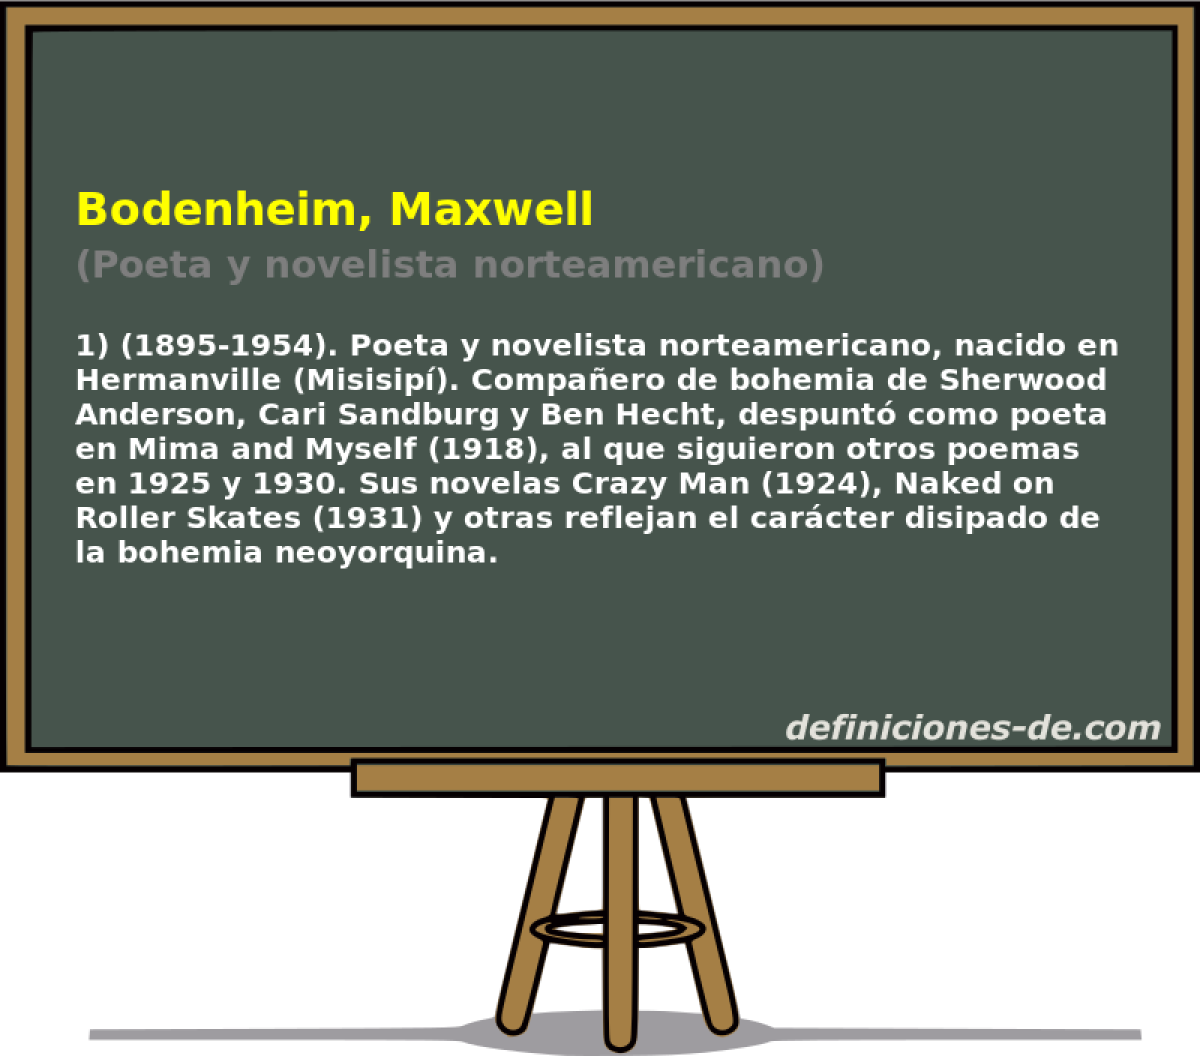 Bodenheim, Maxwell (Poeta y novelista norteamericano)